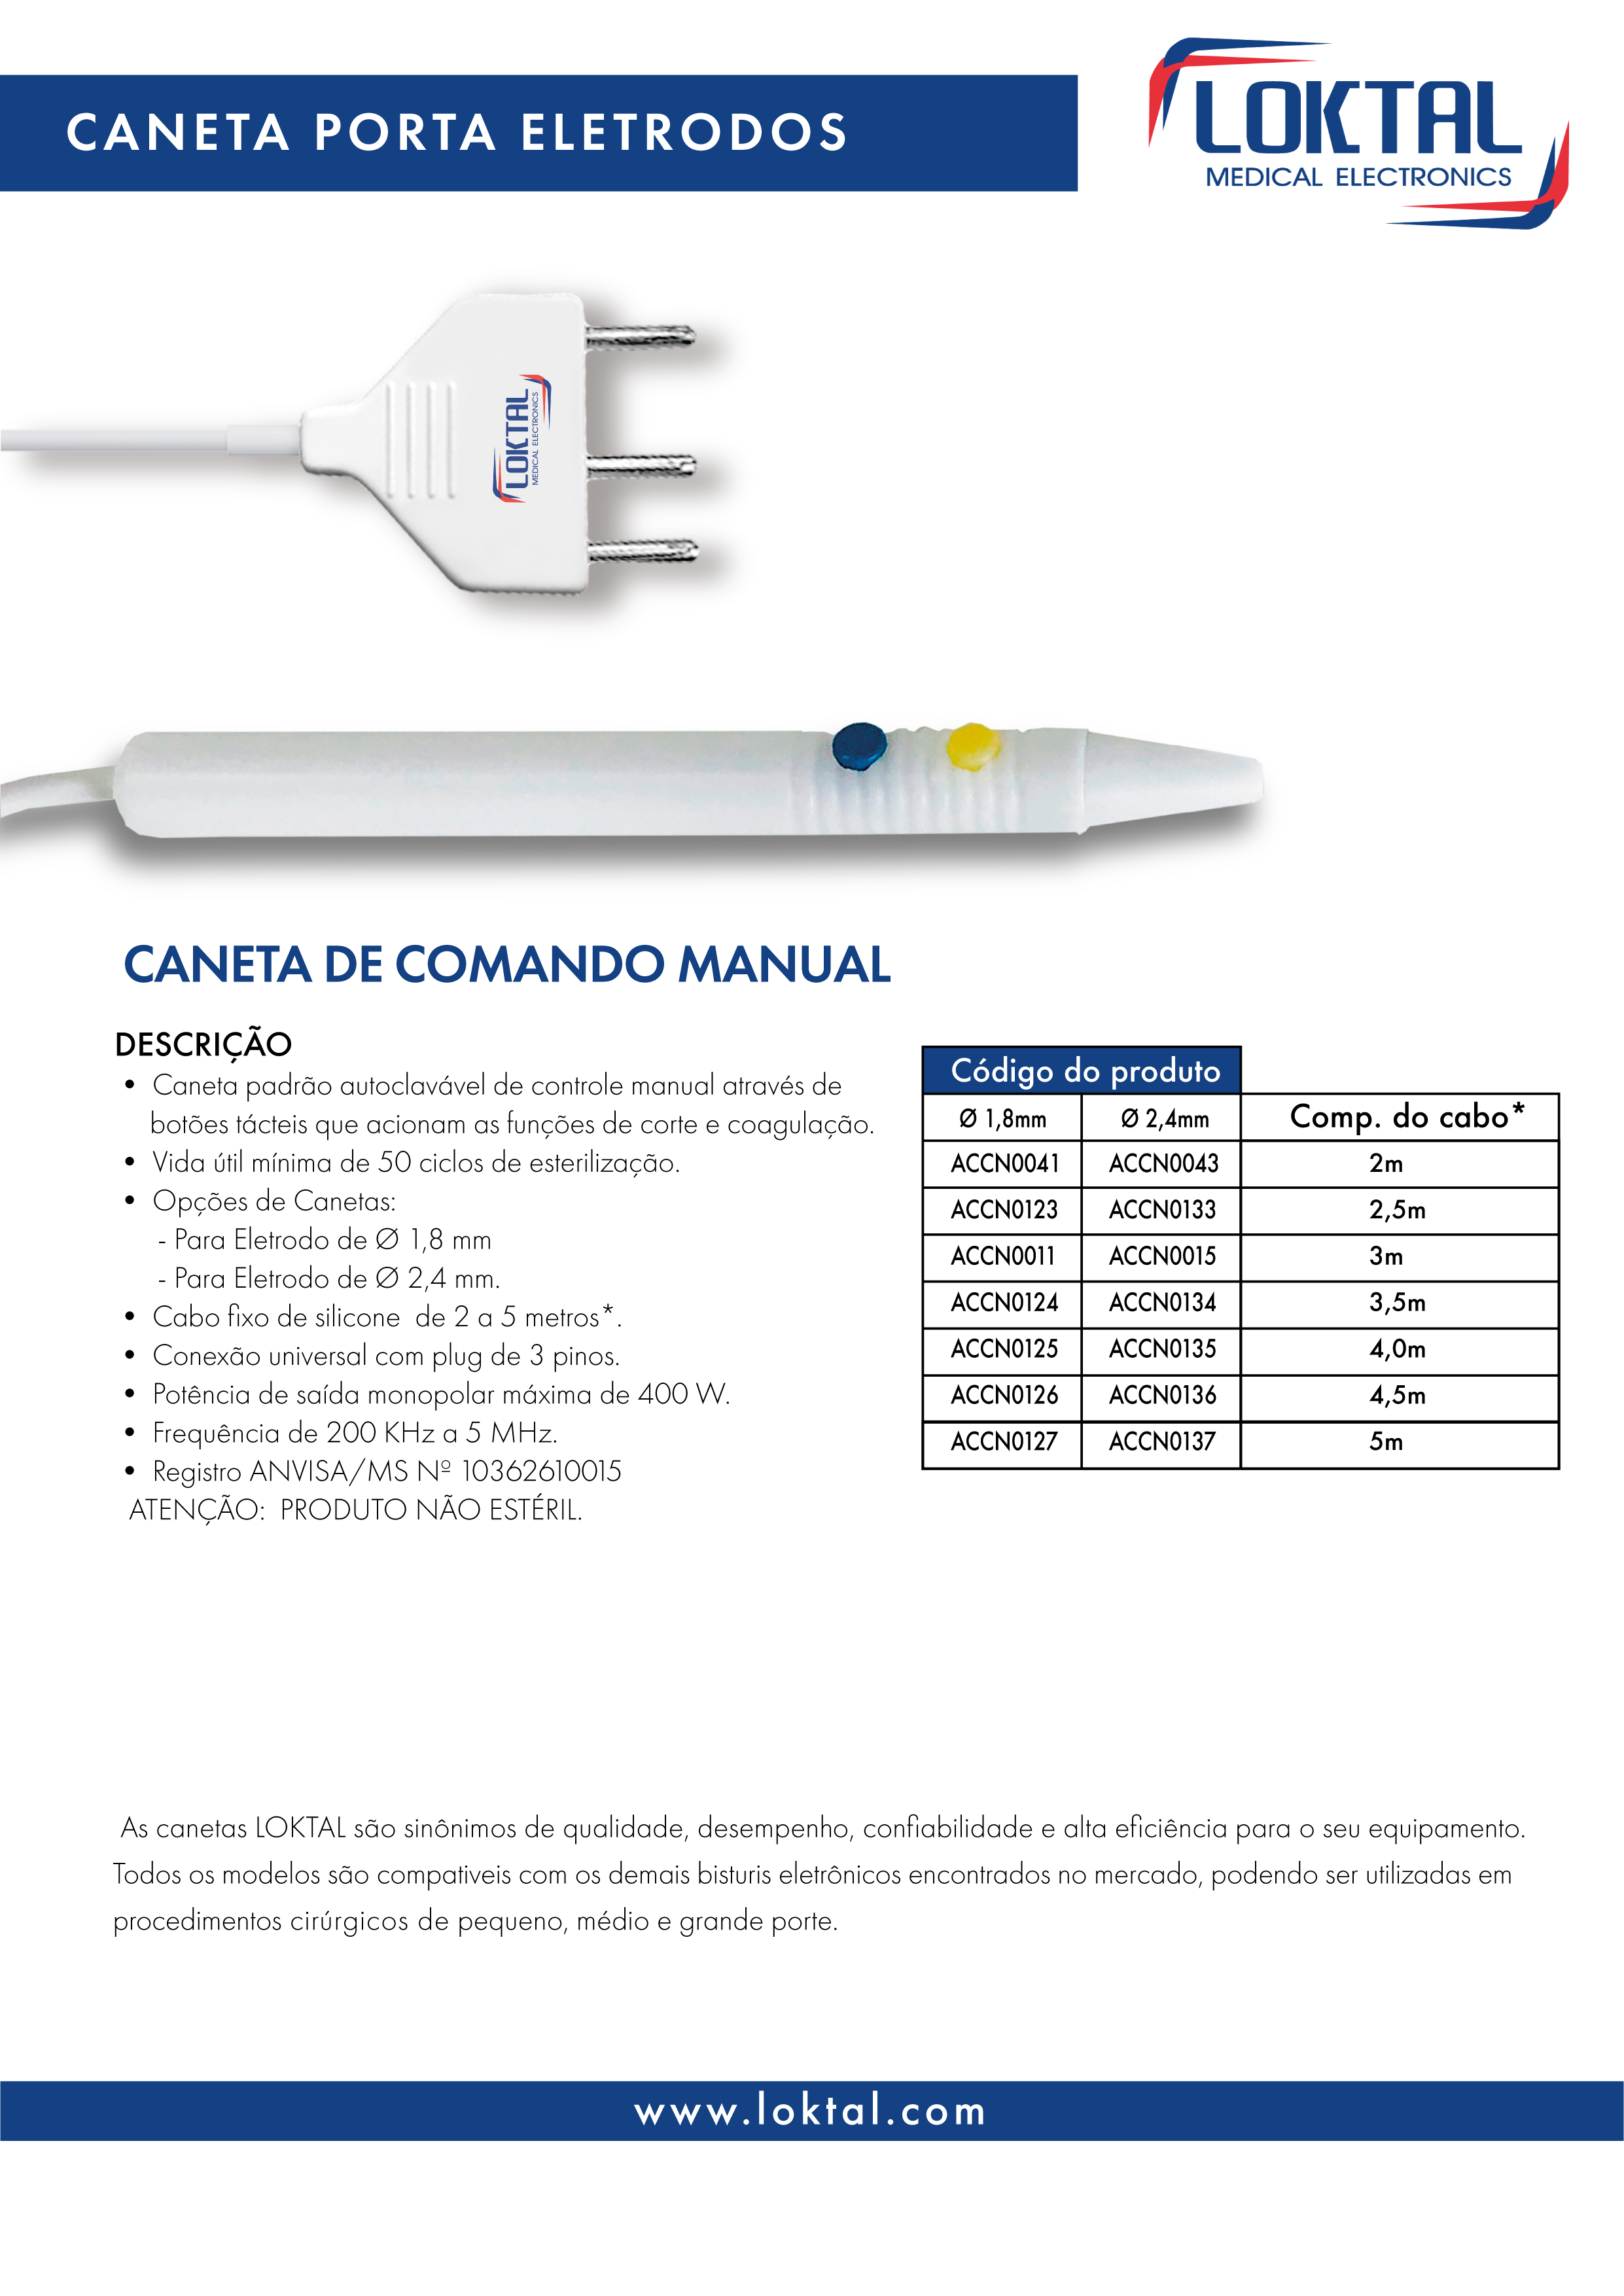 ACCN0015 - Caneta porta eletrodos comando manual autoclavável -  Ø 1,8mm